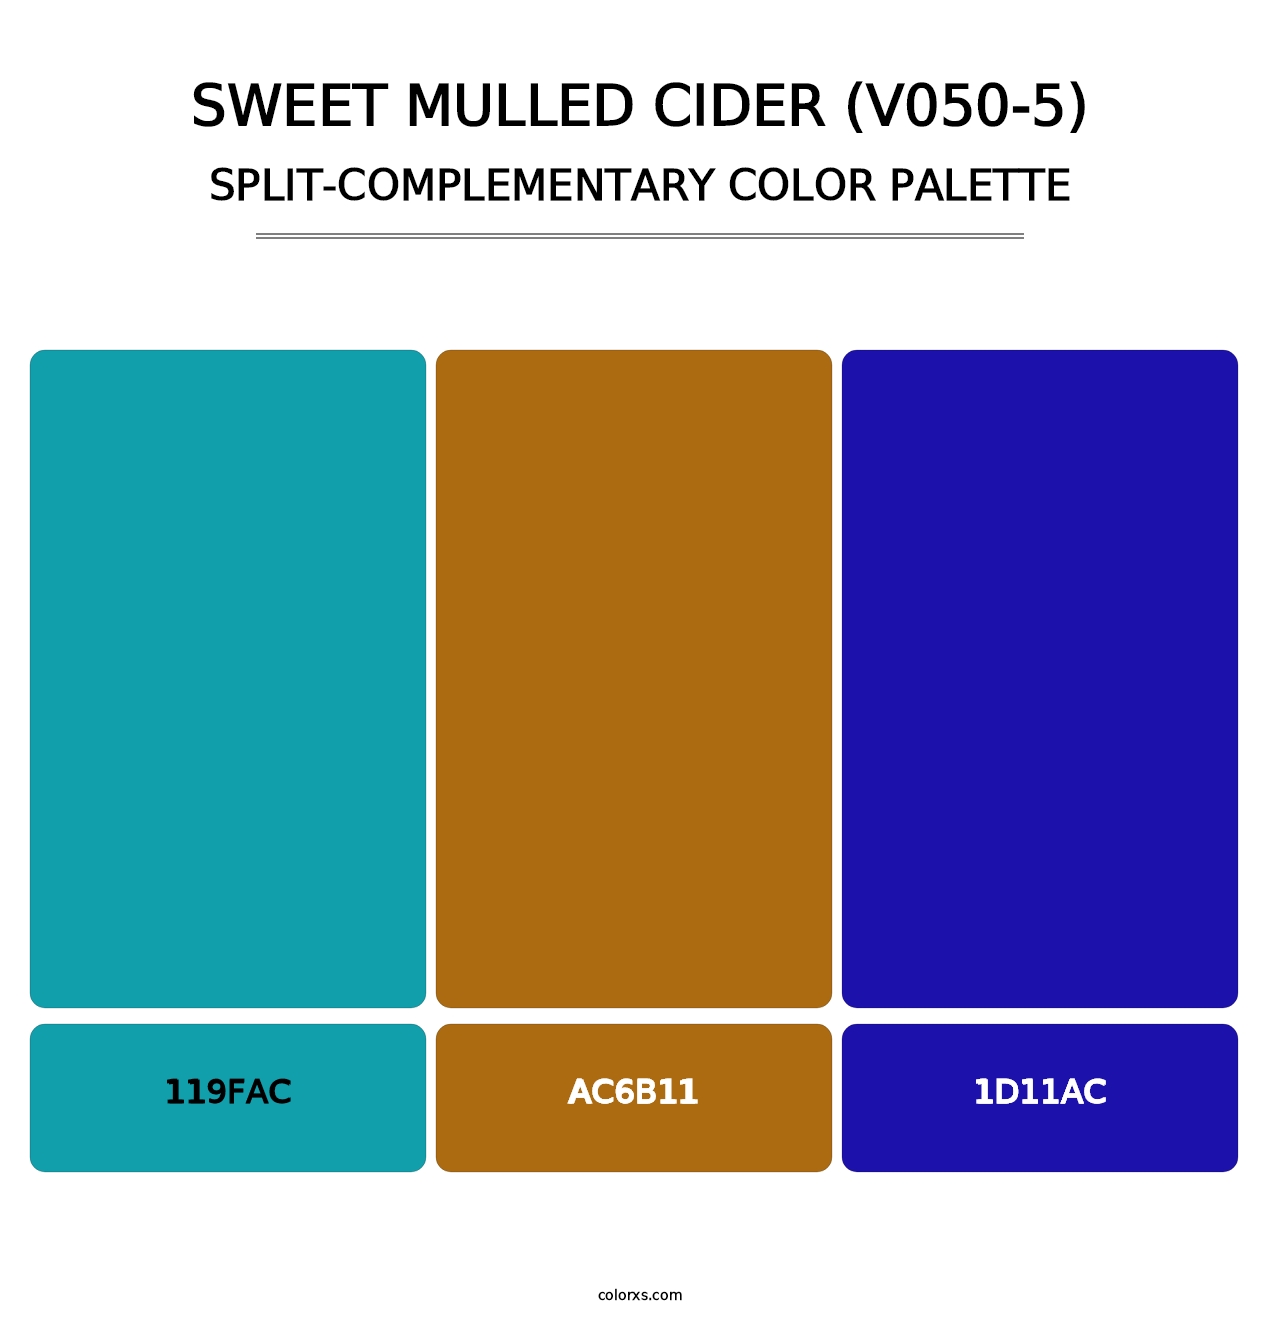 Sweet Mulled Cider (V050-5) - Split-Complementary Color Palette